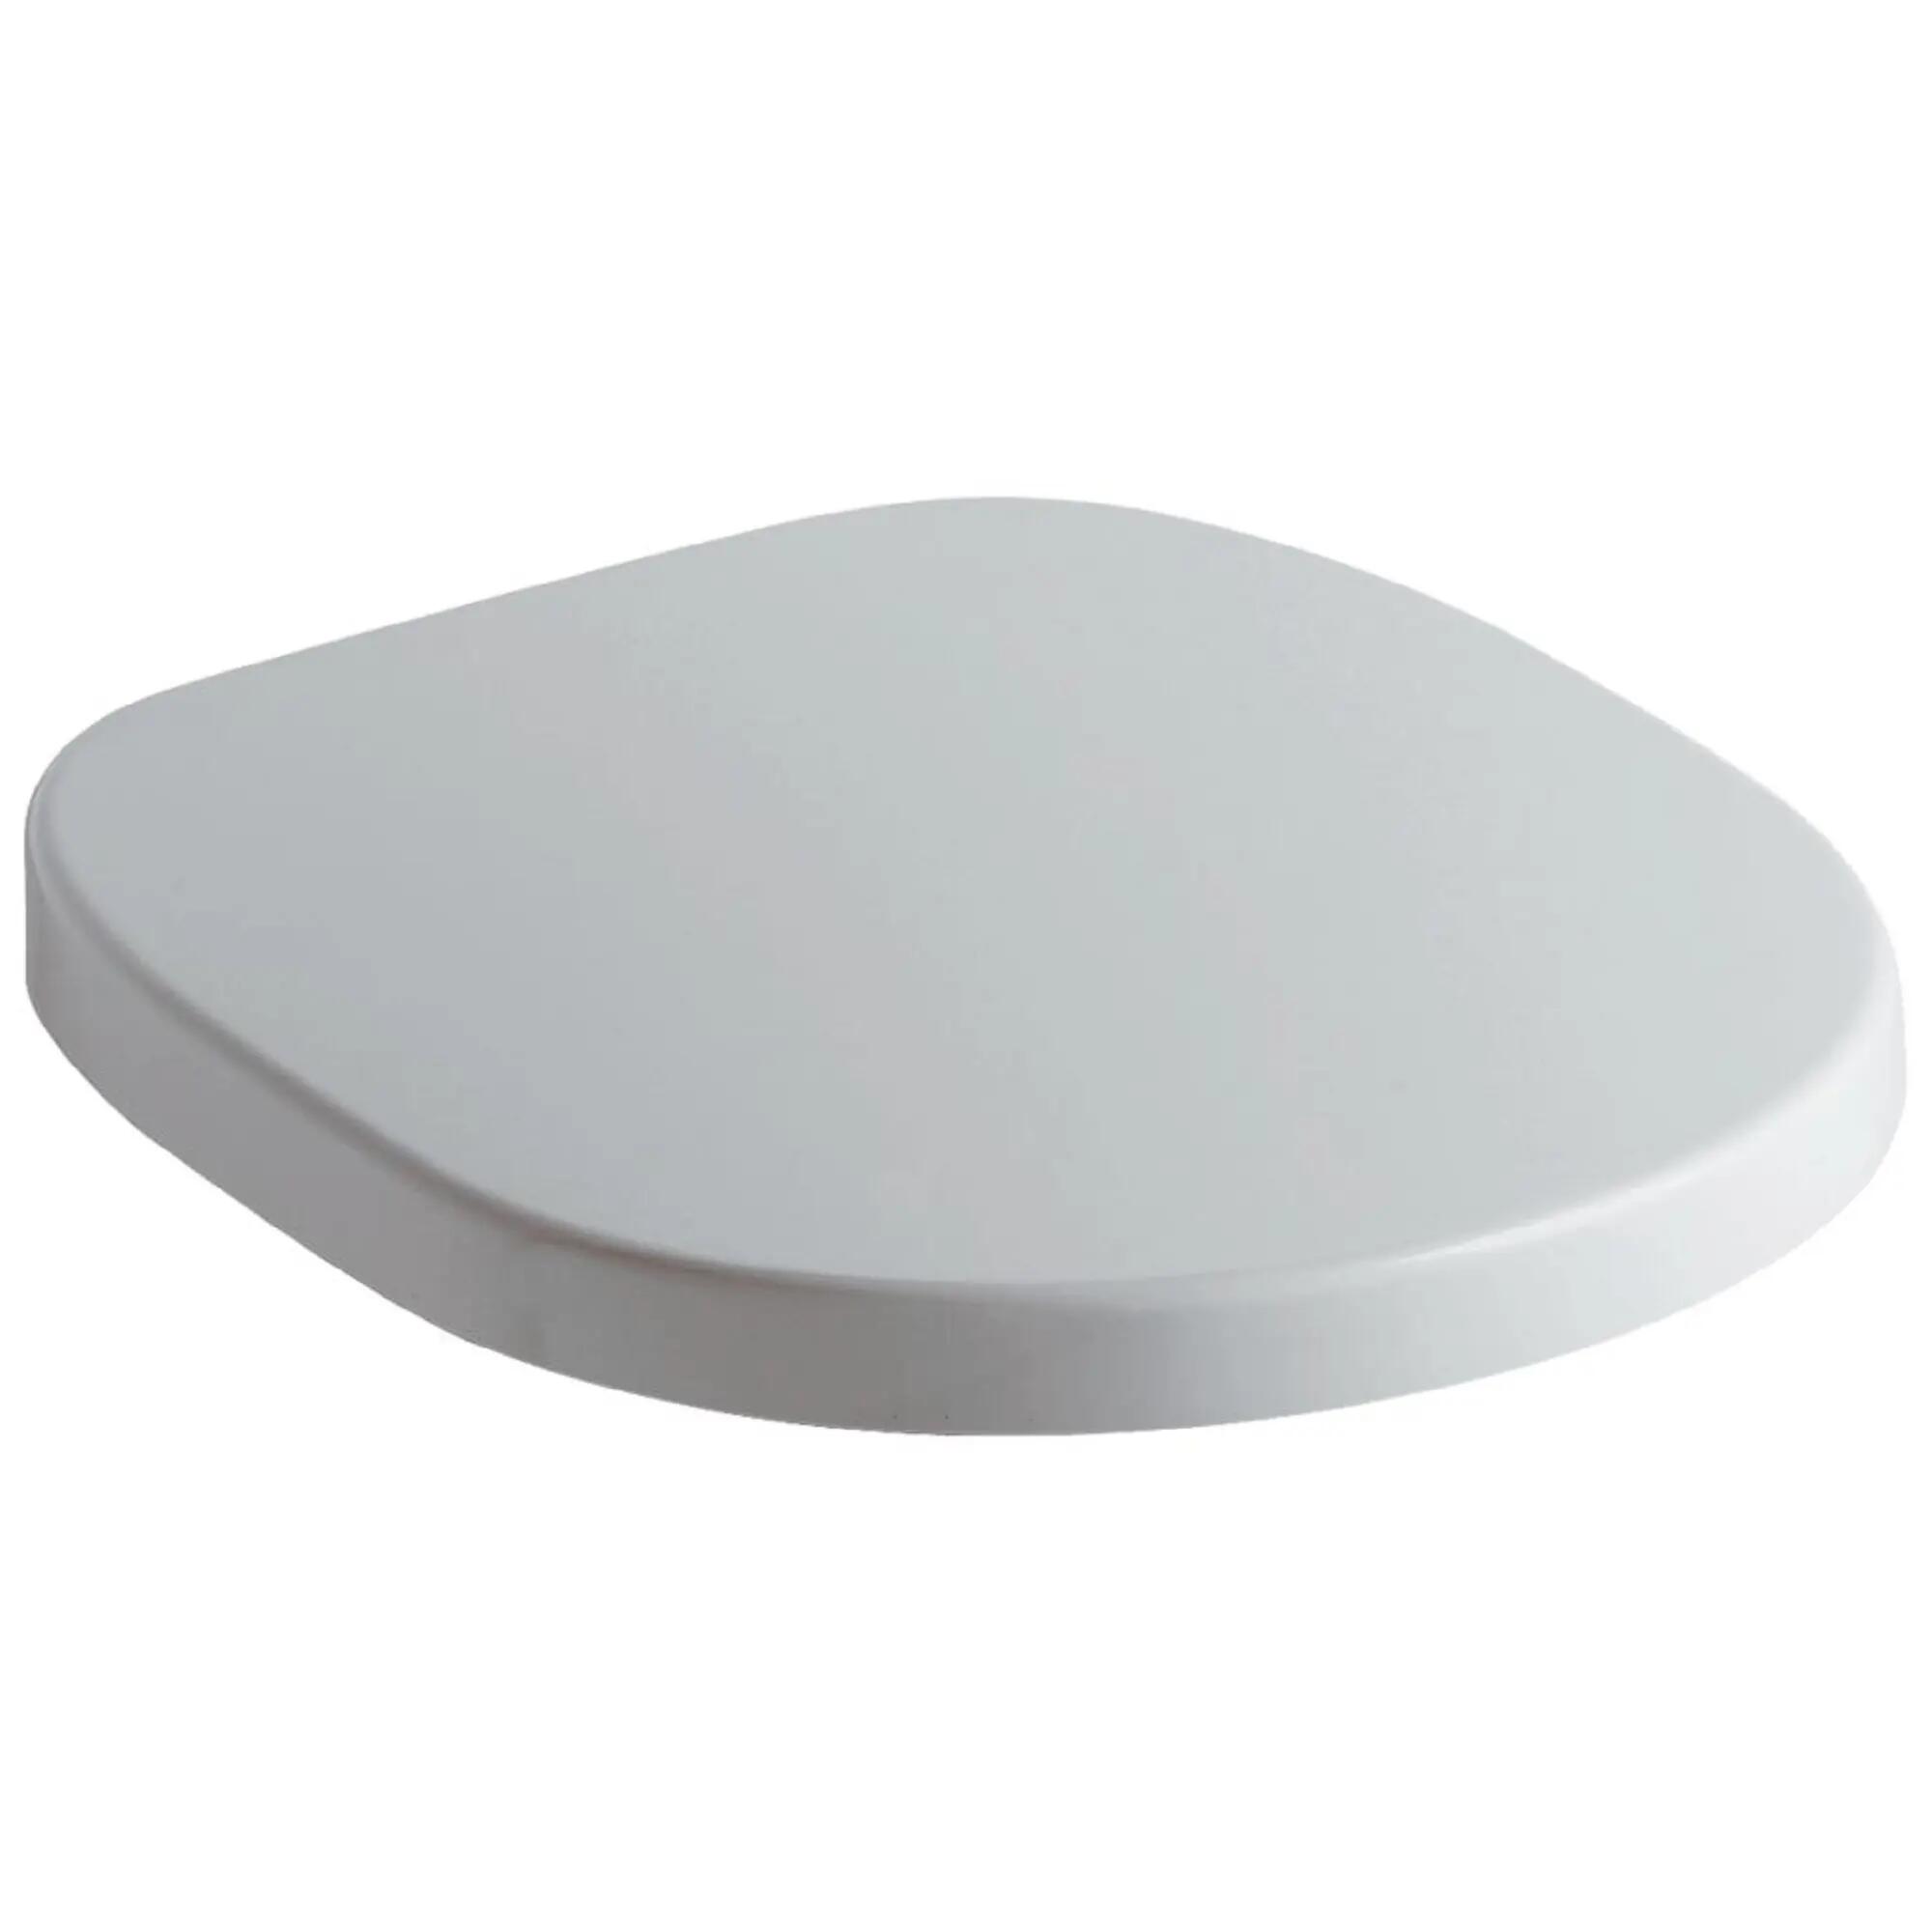 Tapa Wc Plastico Flexible Blanco Universal 45,4X36,5Cm 16,33 €